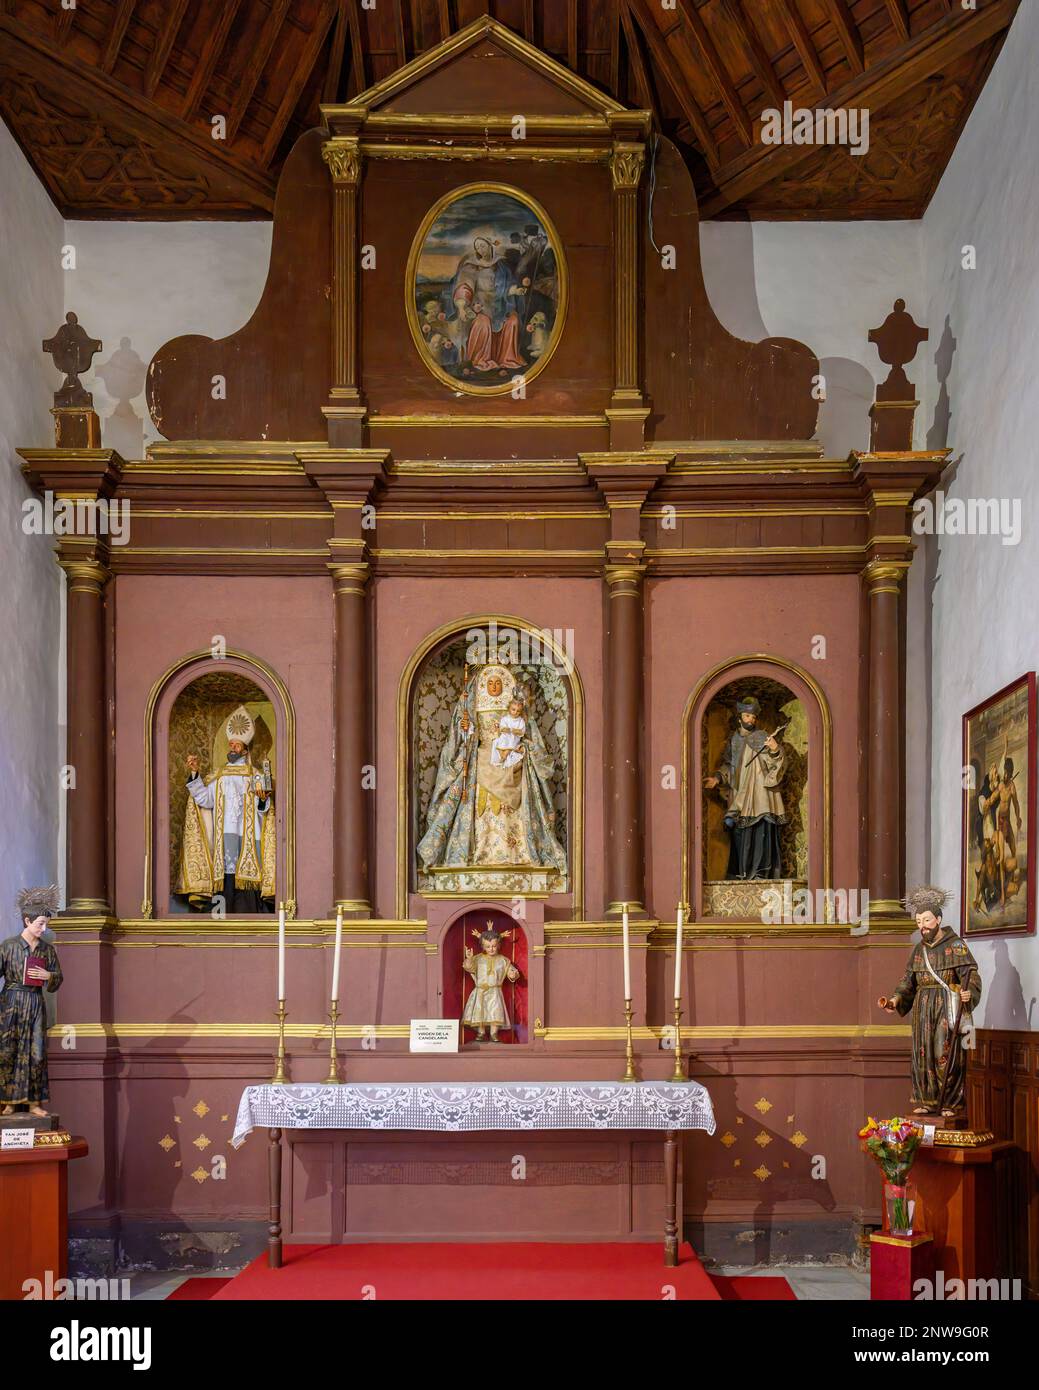 The Altar to the Virgin of the Candelaria in the Iglesia Nuestra Señora de la Concepción in Santa Cruz de Tenerife Stock Photo